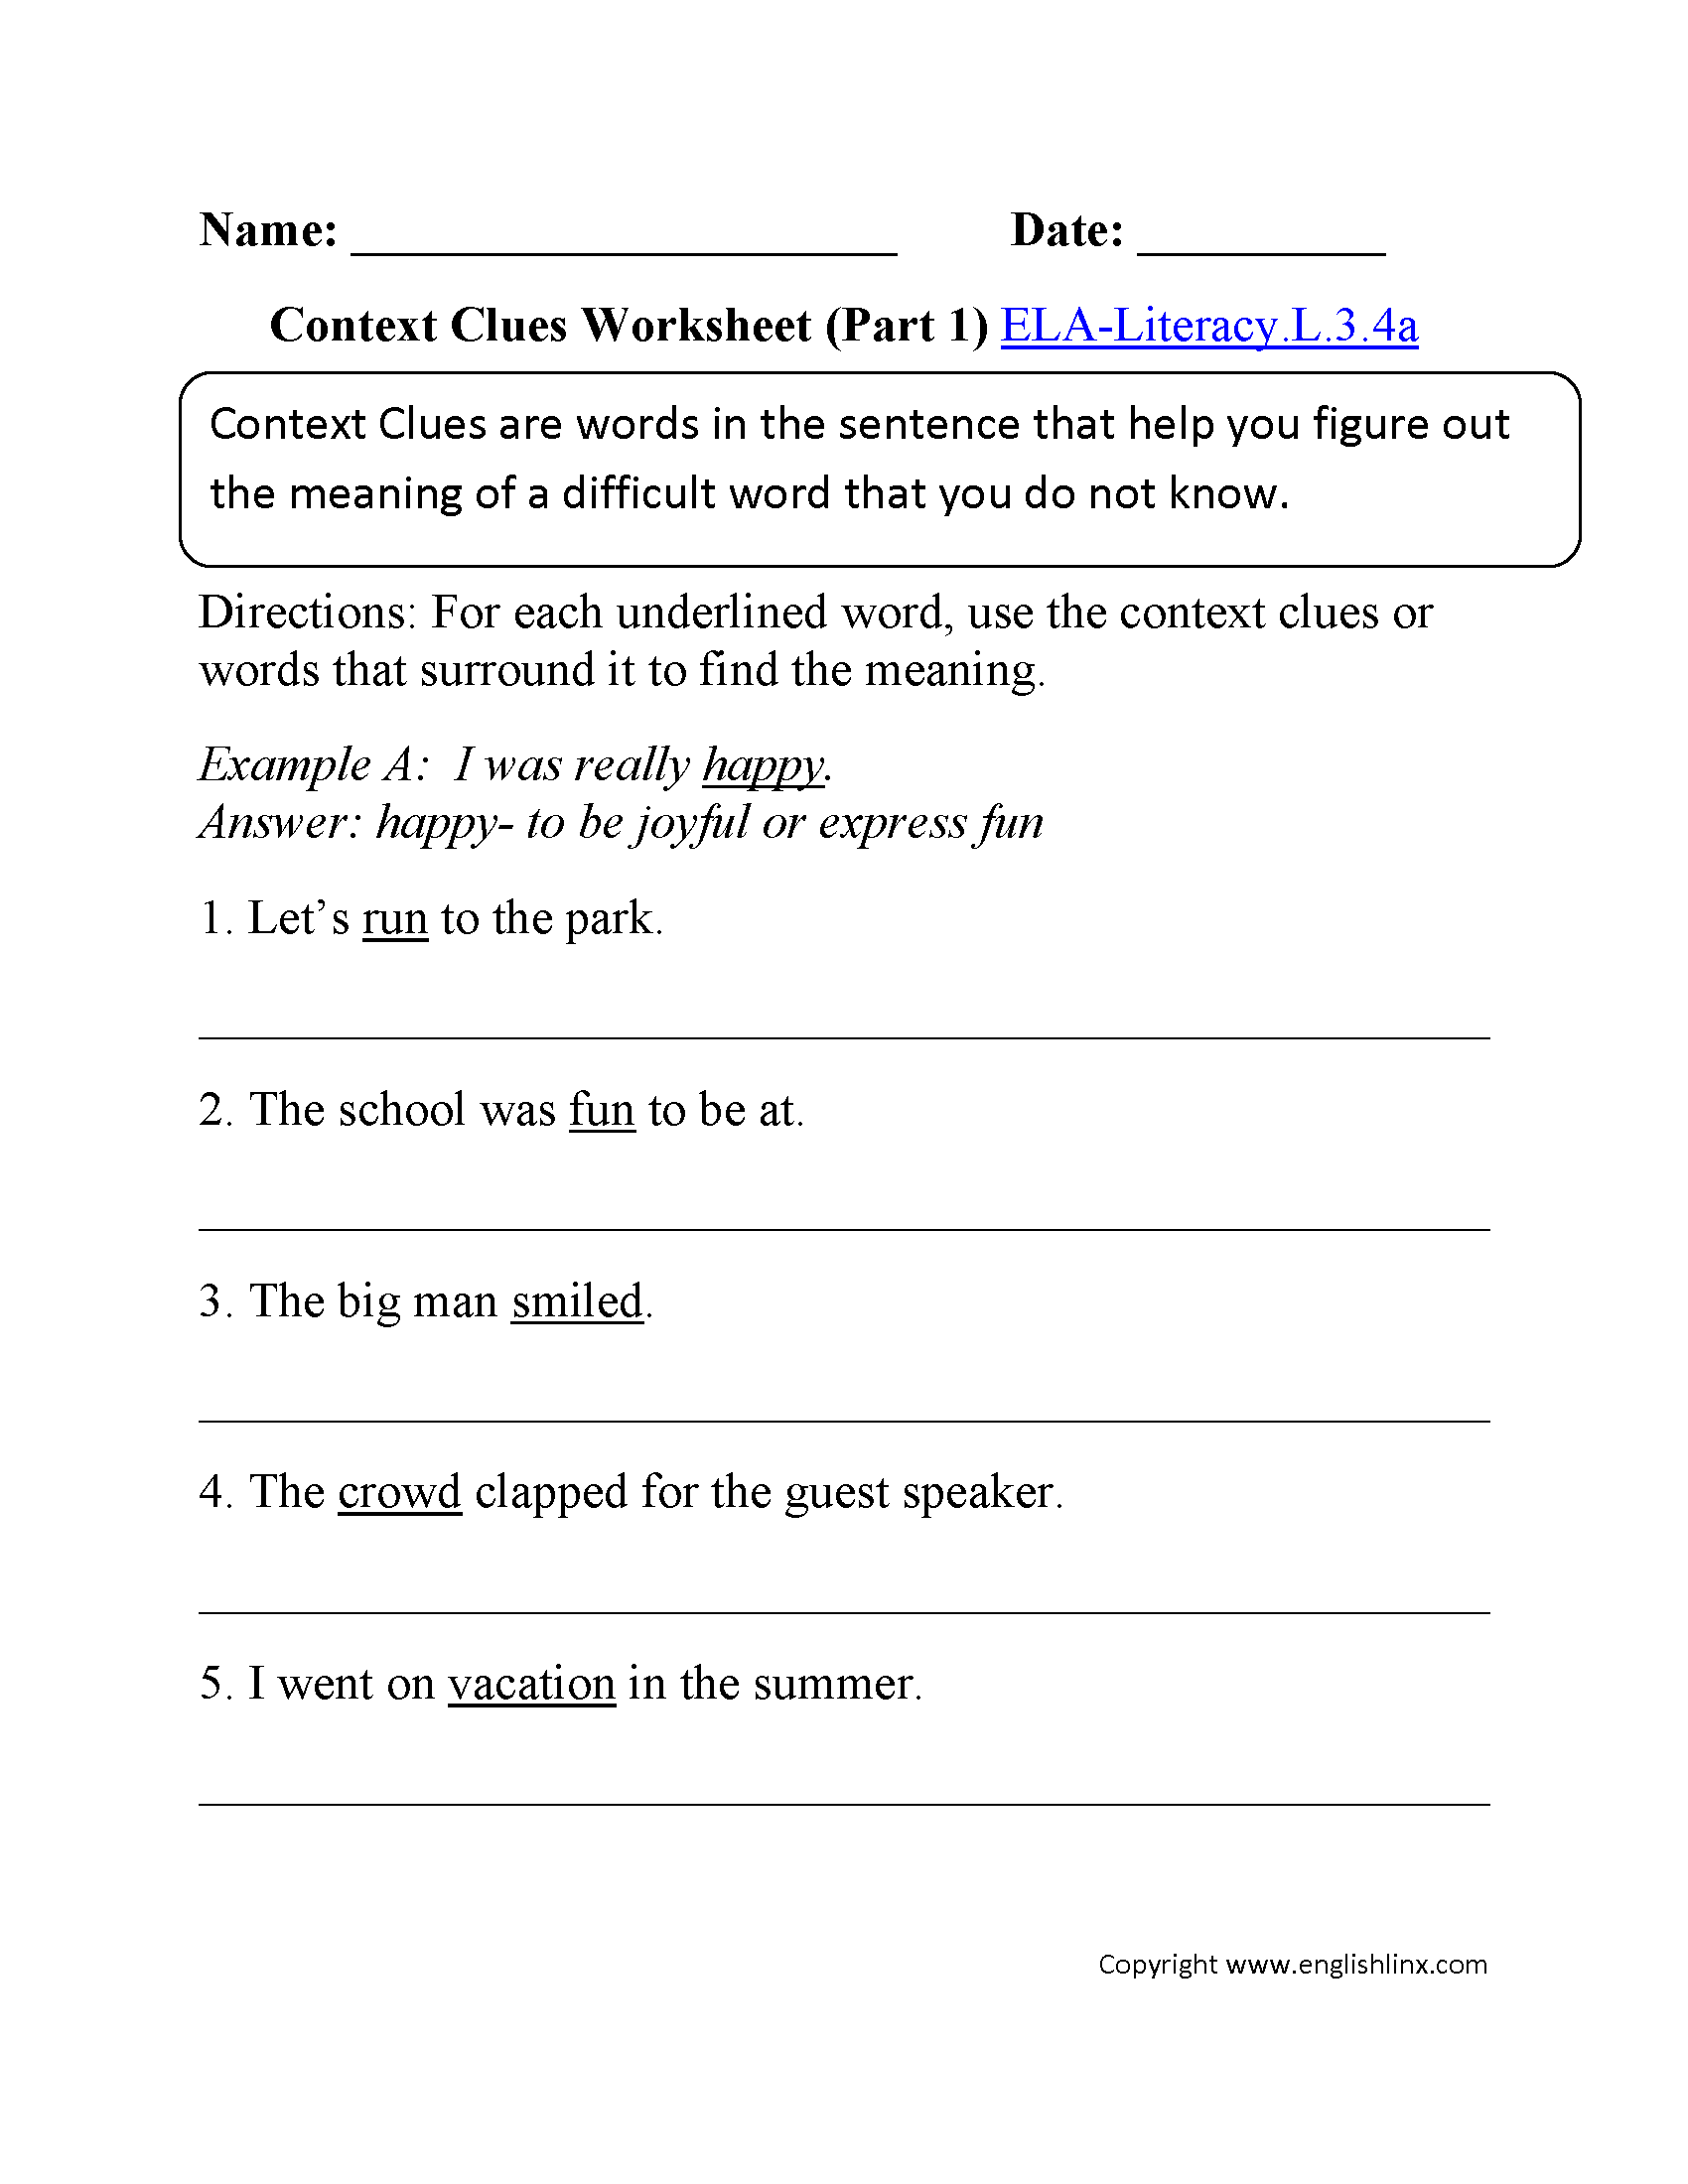 Context Clues Worksheet 1 ELA-Literacy.L.3.4a Language Worksheet